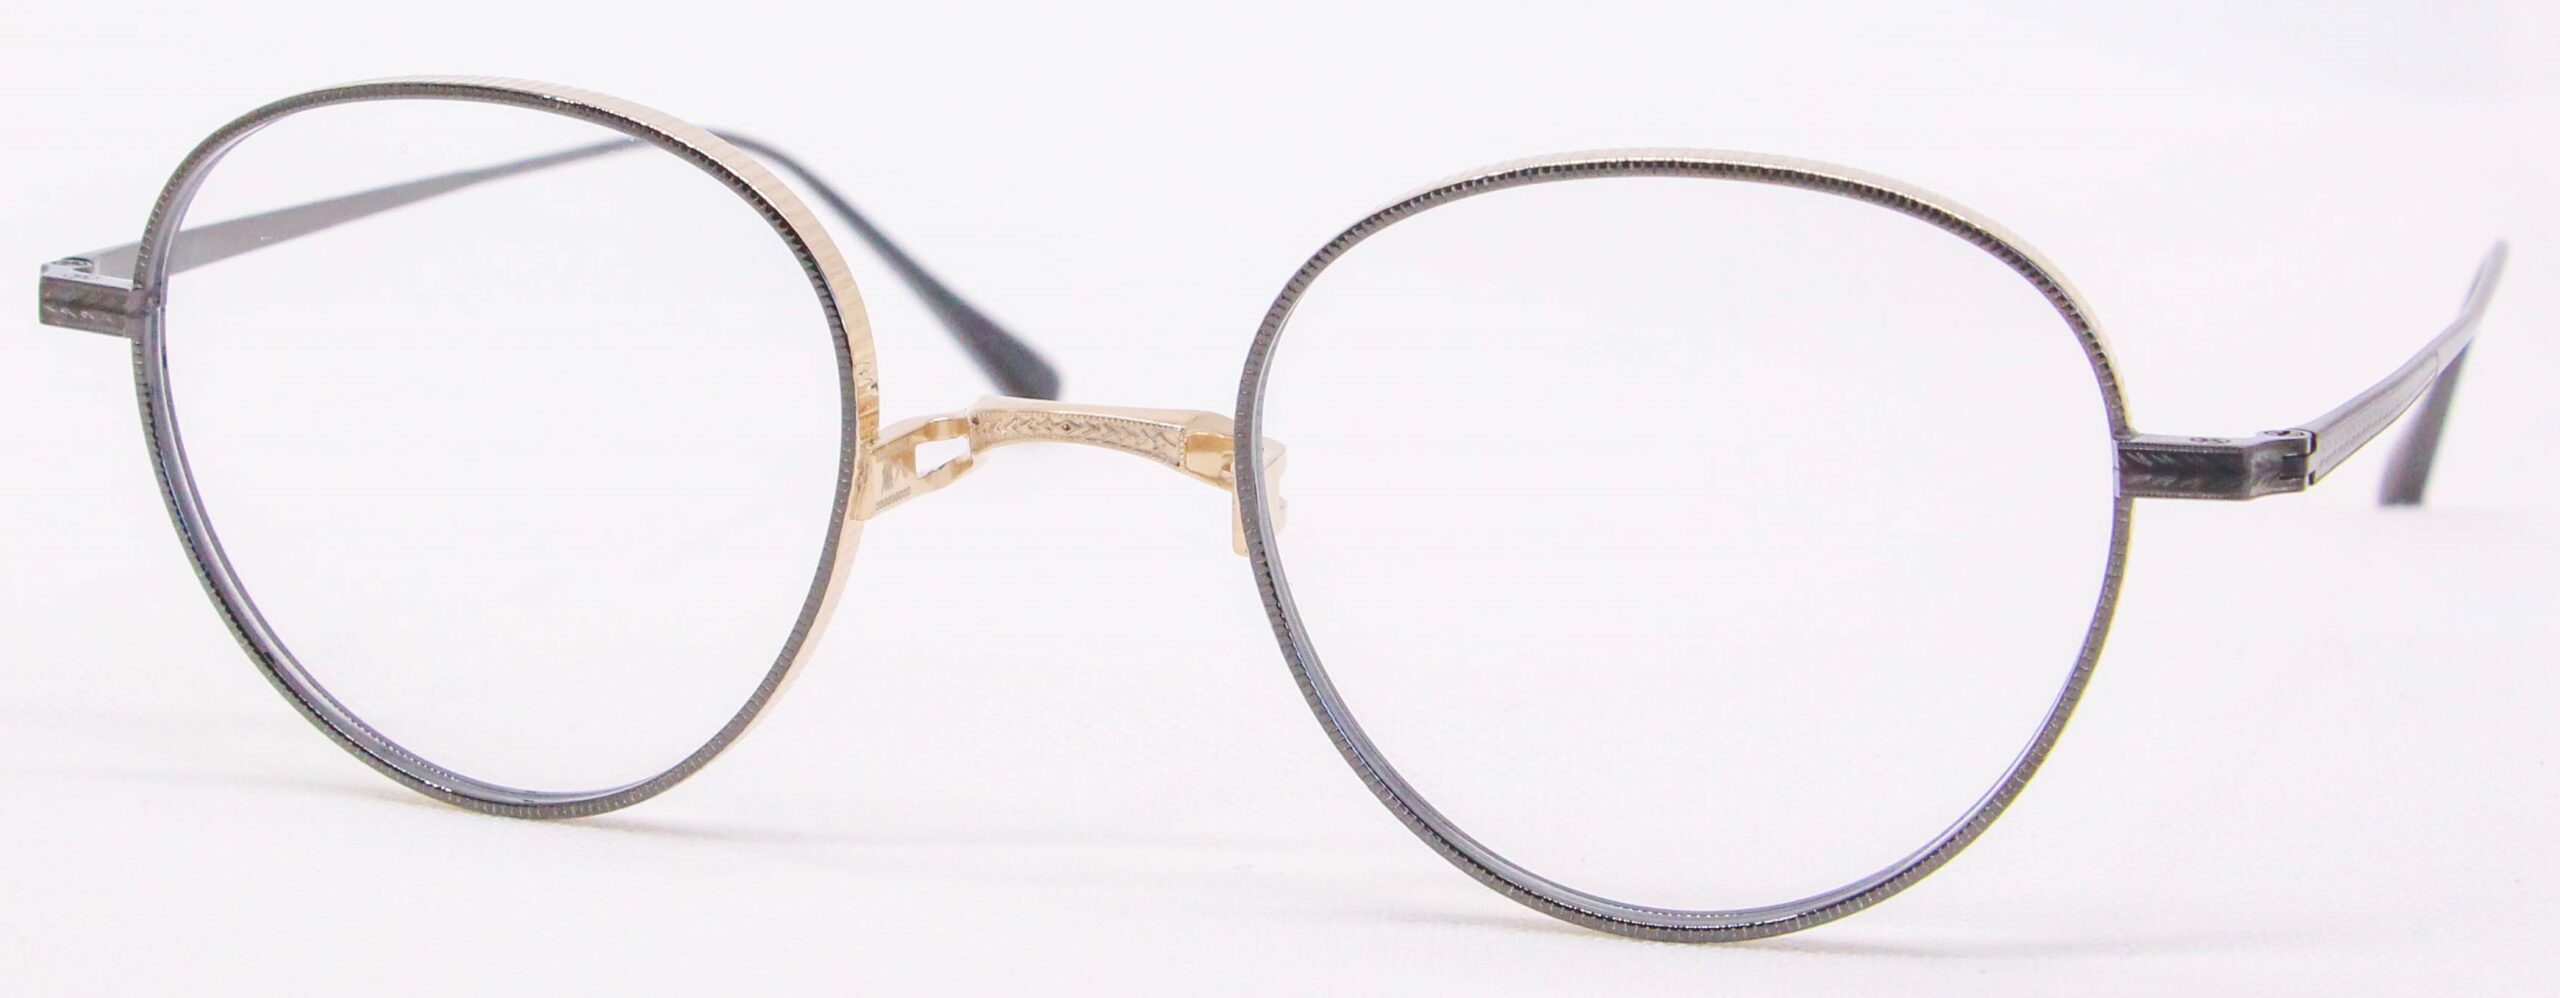 眼鏡のカラータイプC-4 Gray/Gold《限定カラー》